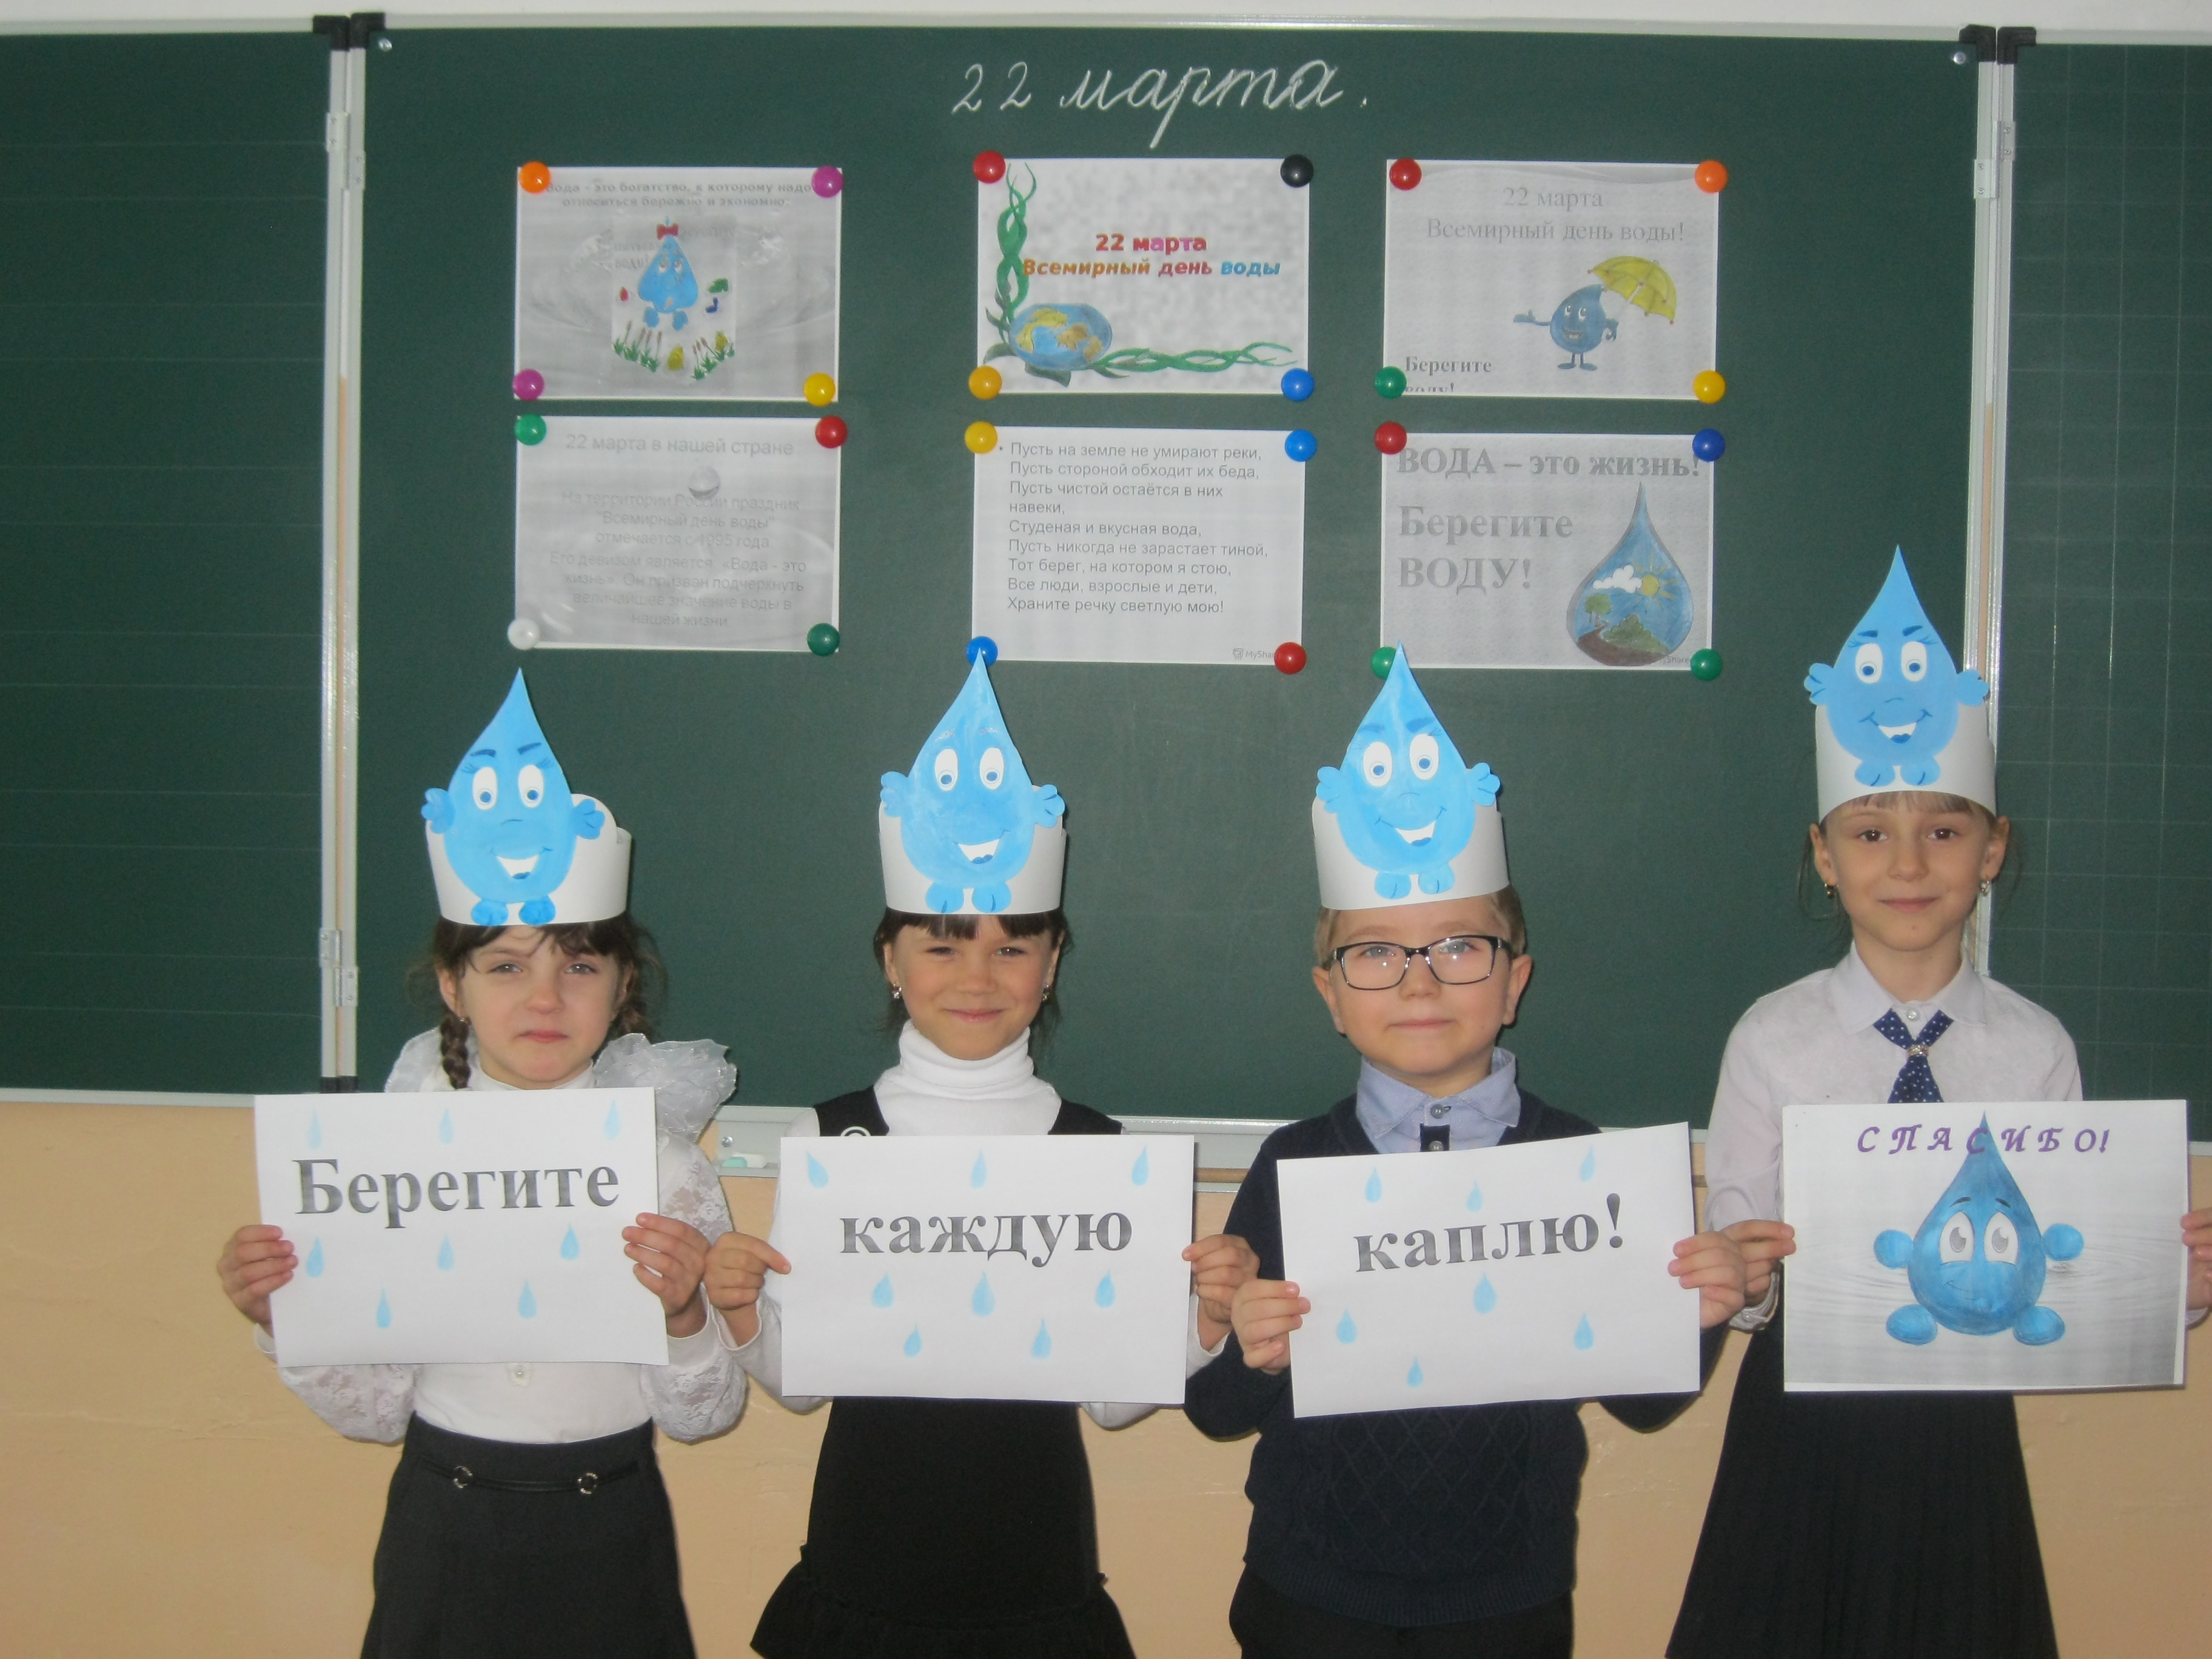 Всемирный день воды в библиотеке. День воды мероприятия в школе. Мероприятие день воды в начальных классах. Всемирный день воды мероприятия. Всемирный день воды мероприятия в школе.